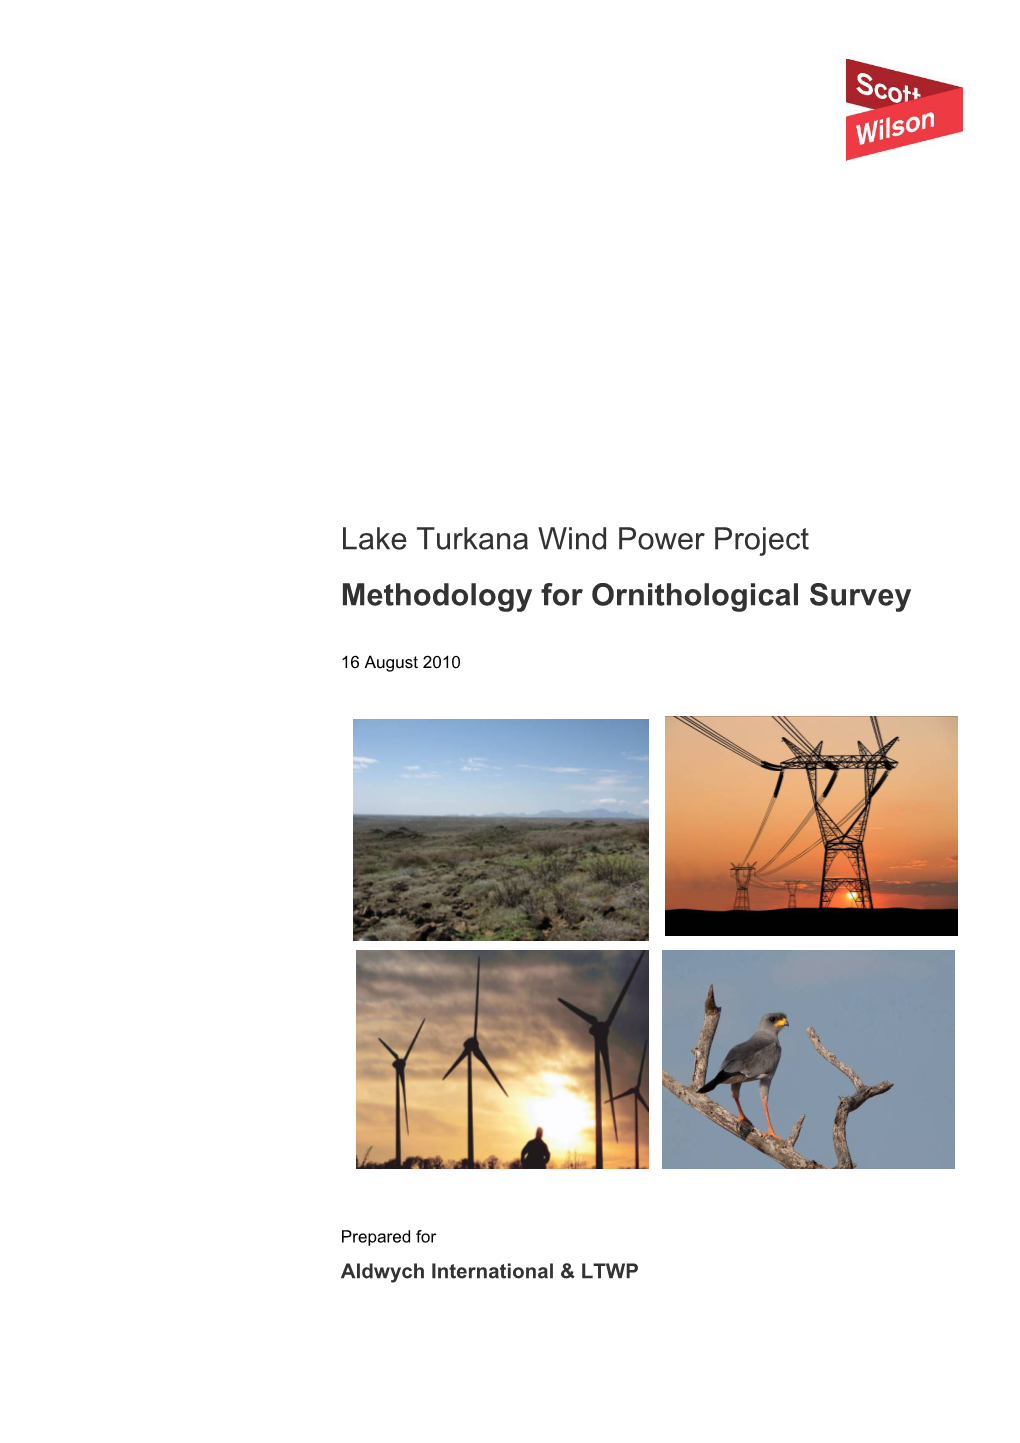 Lake Turkana Wind Power Project Methodology for Ornithological Survey